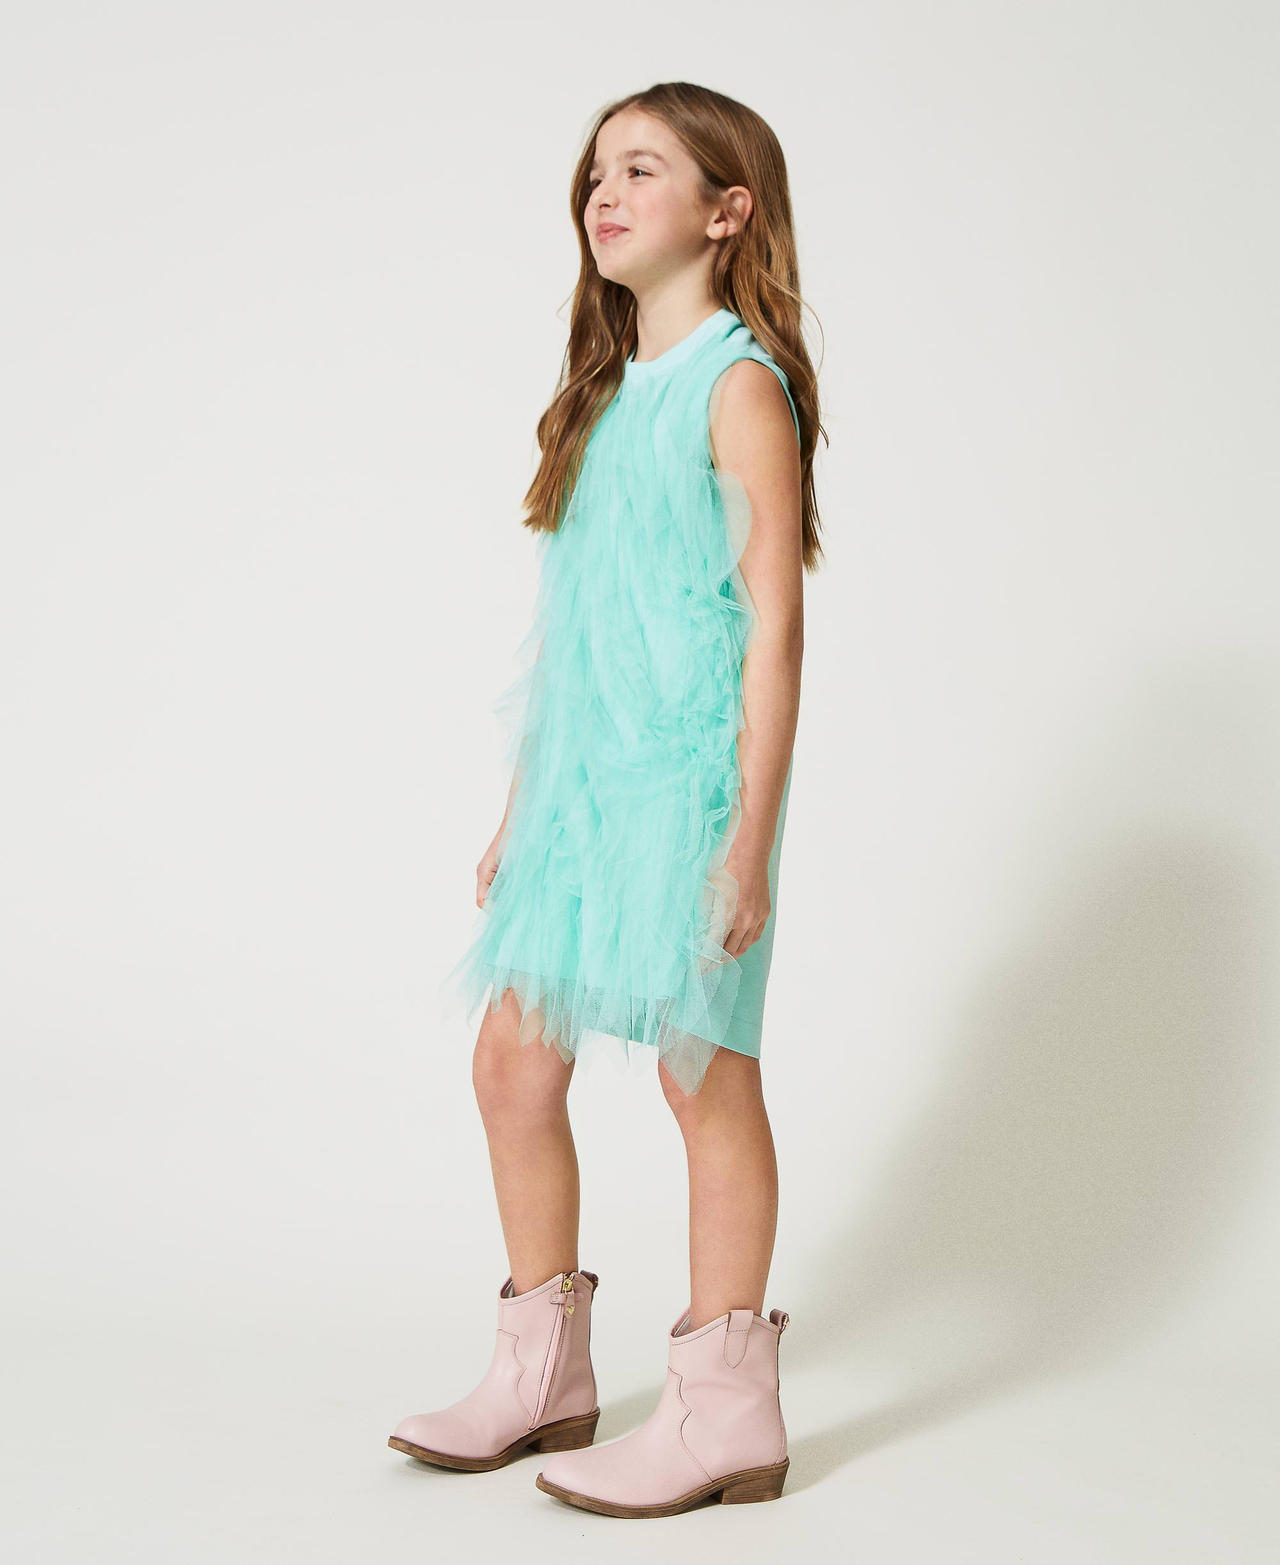 Короткое платье с волнистыми оборками из тюля Молочный мятно-зеленый Девочка 231GJ2Q8A-02